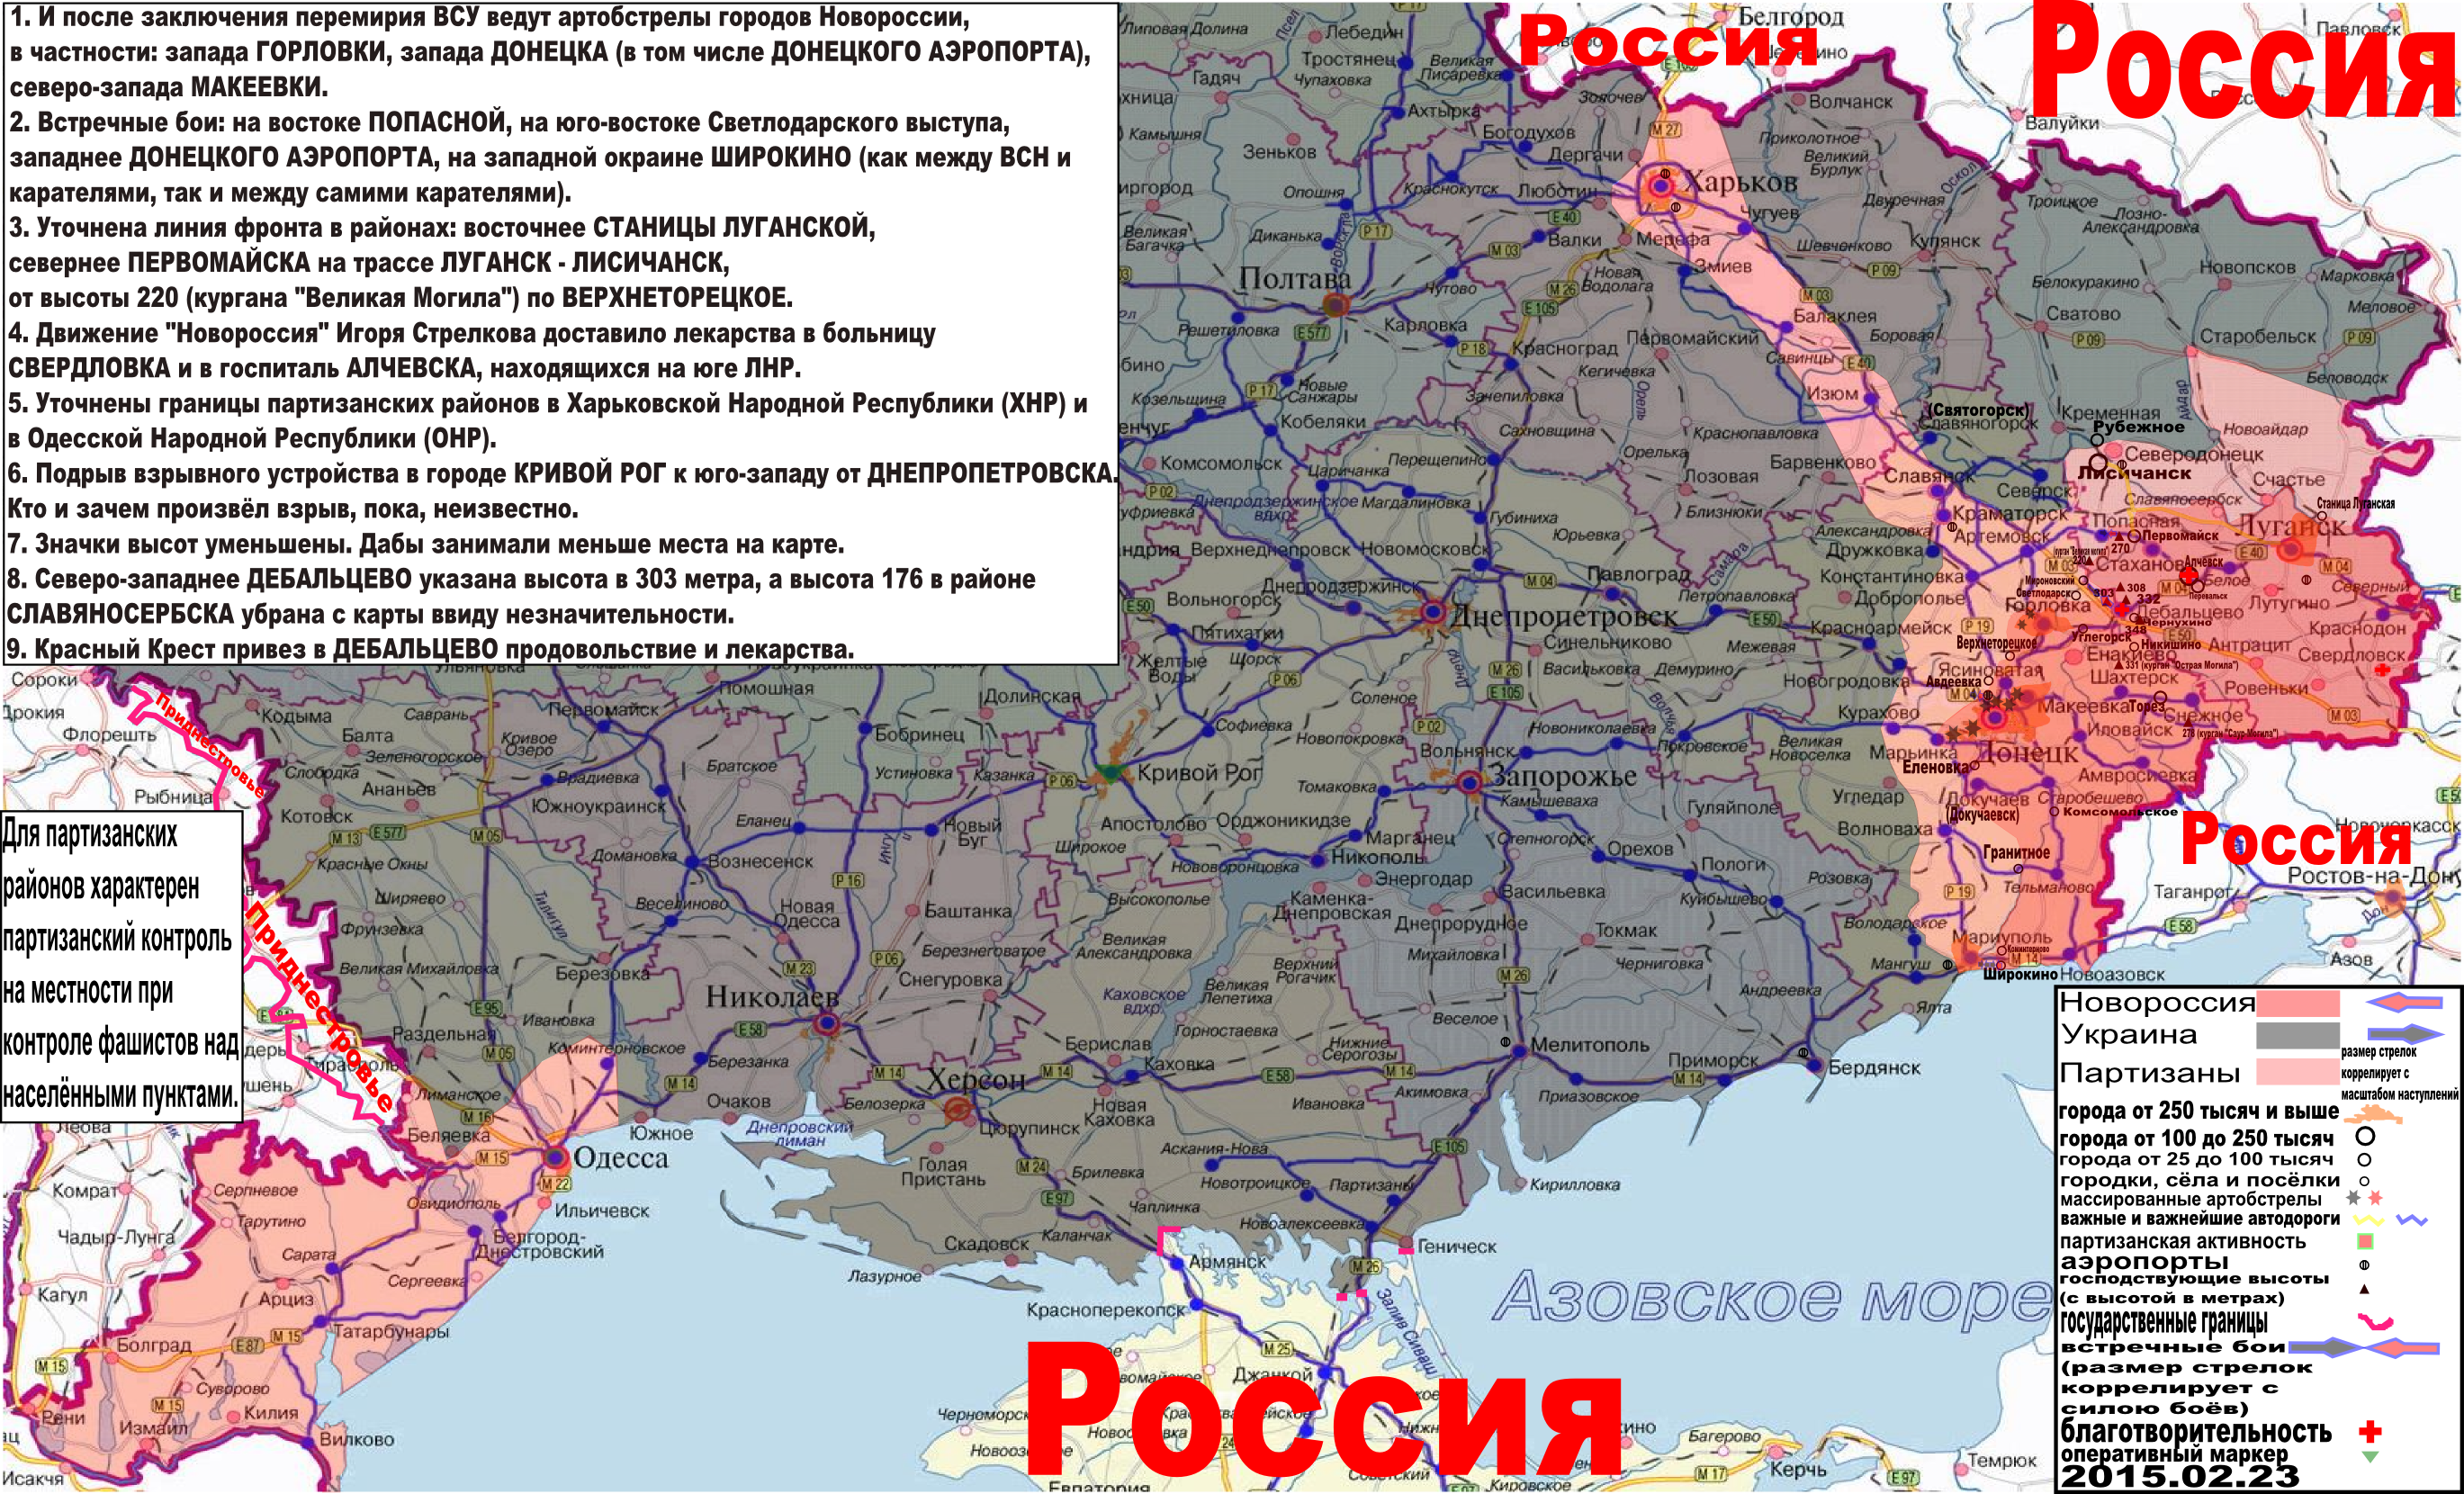 Карта боевых действий и событий в Новороссии с обозначением зон партизанской активности за 23 февраля 2015